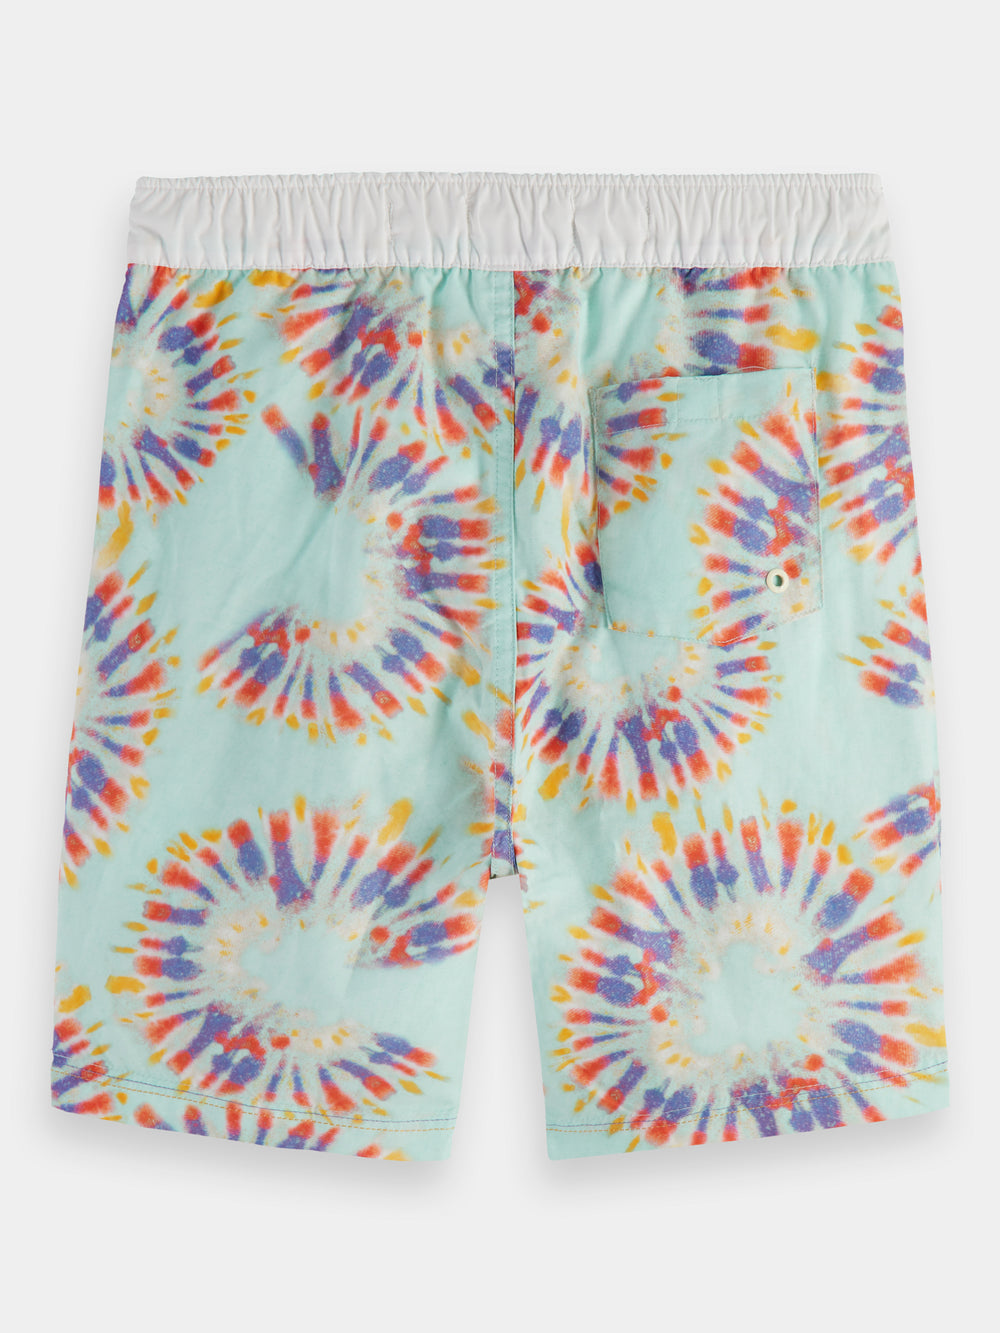 Tie-dyed printed swim shorts - Scotch & Soda NZ